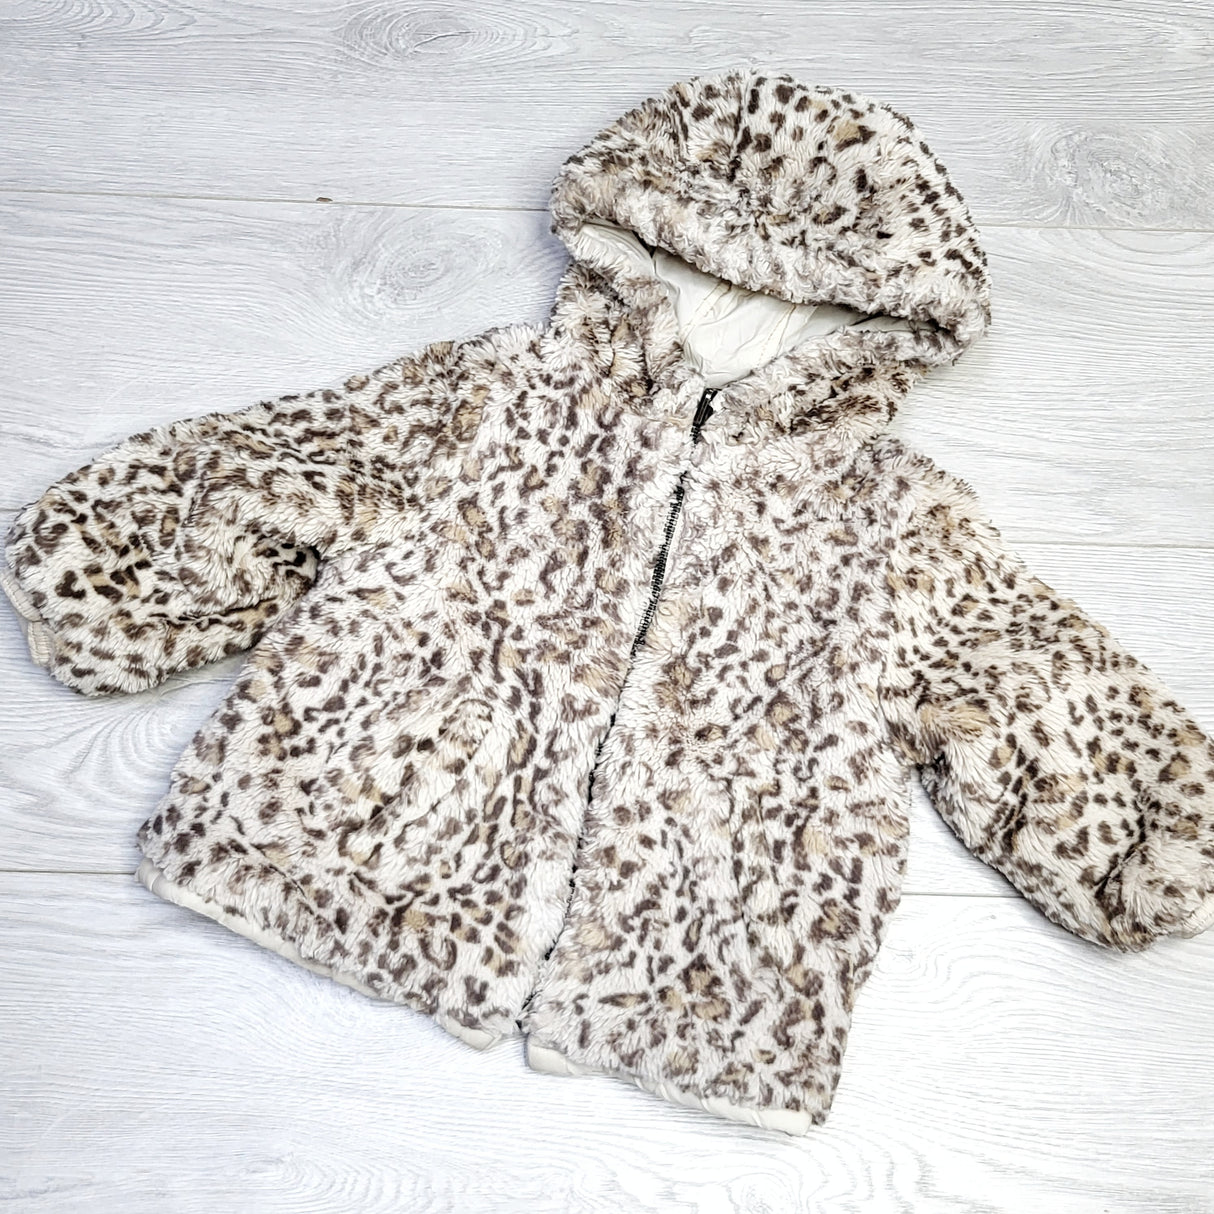 KJHN2 - Zara leopard print faux fur reversible jacket. Size 12-18 months